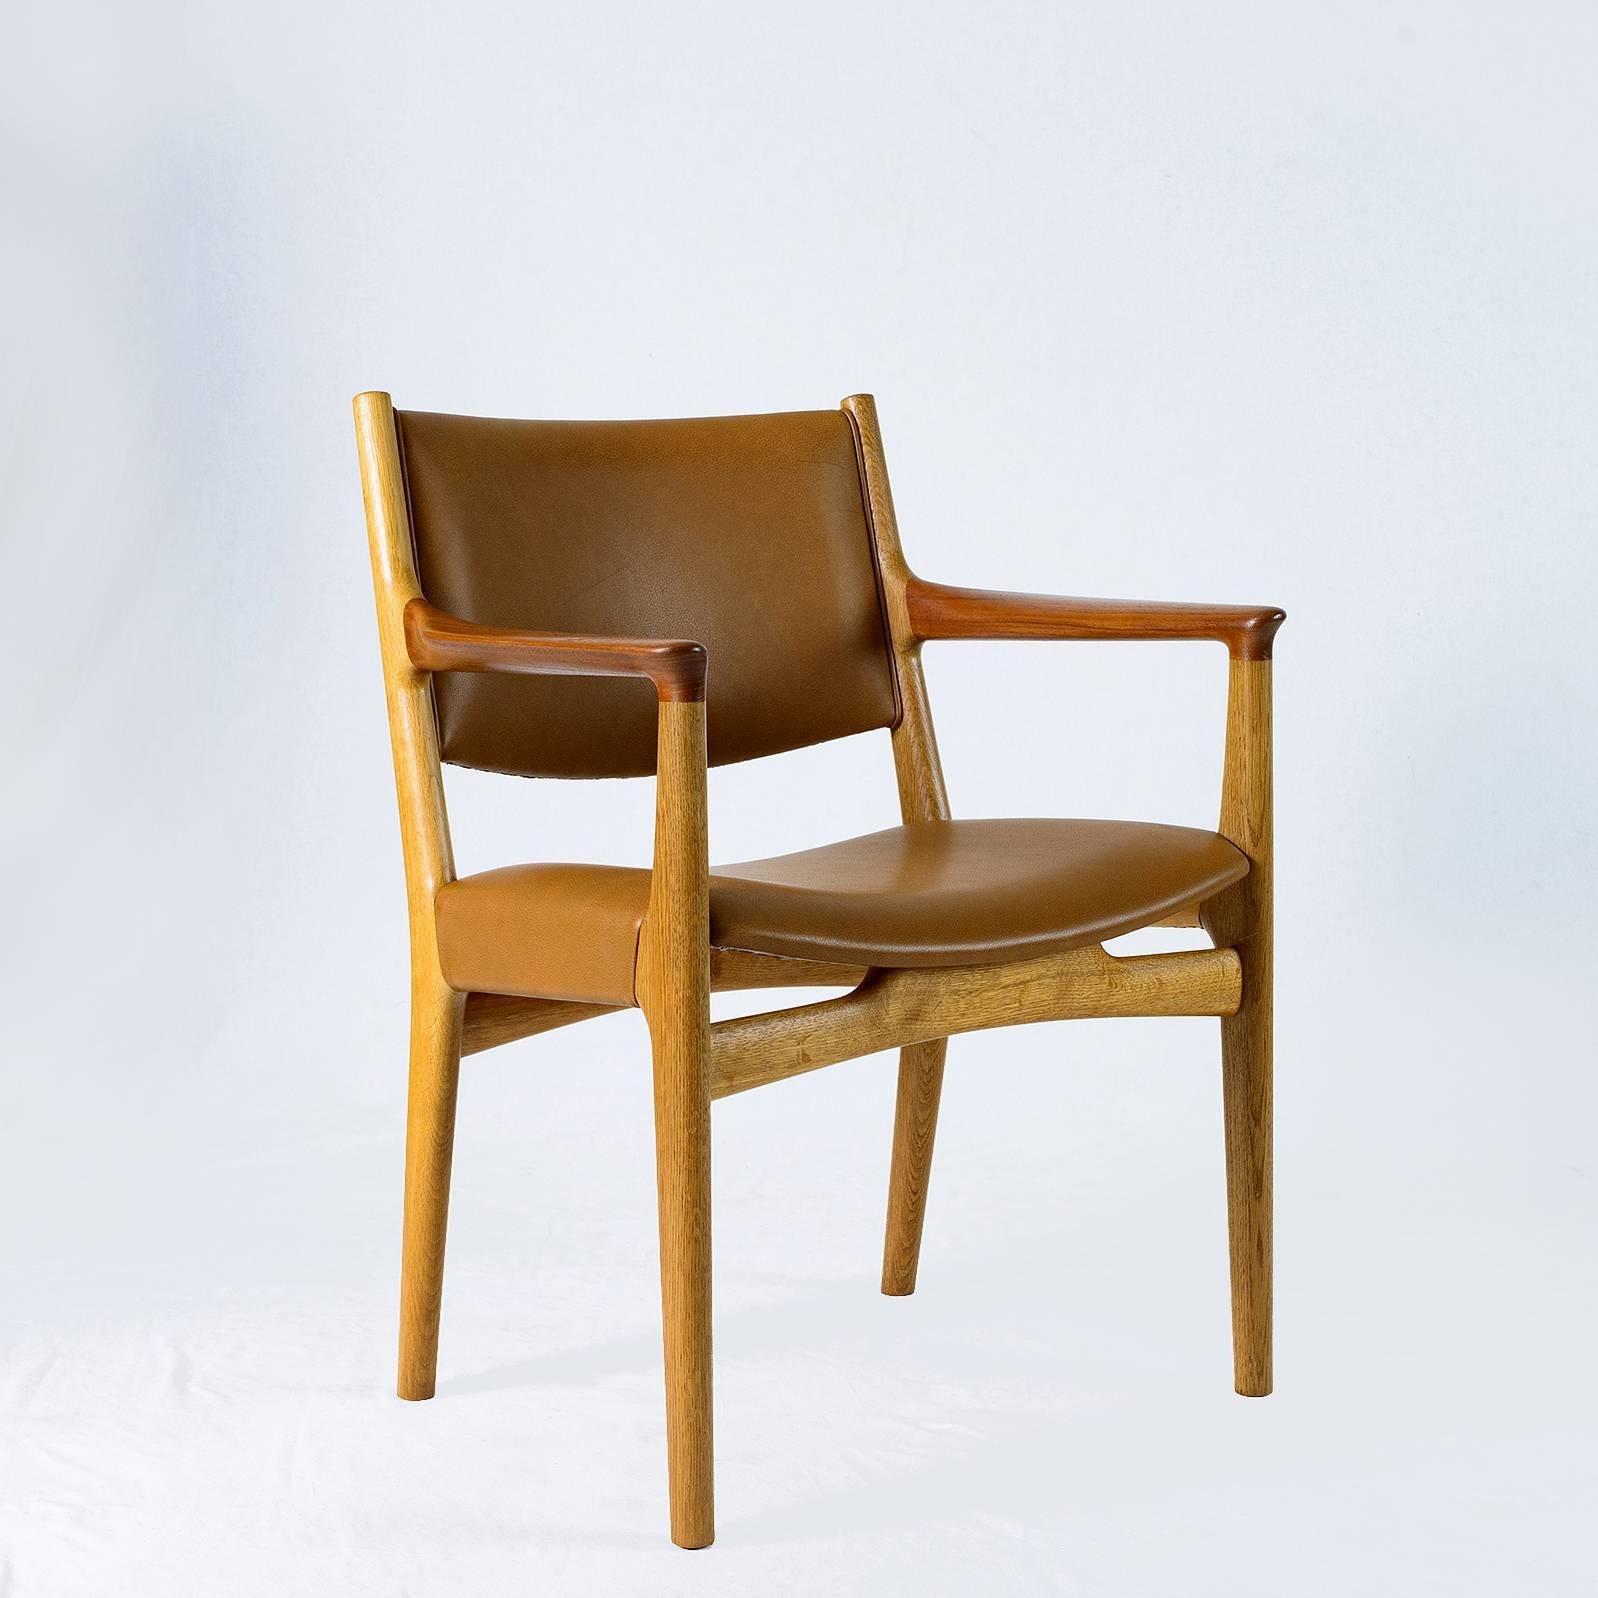 Paire de fauteuils Hans Wegner JH-525 conçus en 1959 et produits par Johannes Hansen. Note : J'en ai deux autres qui ont besoin d'être retapissés.